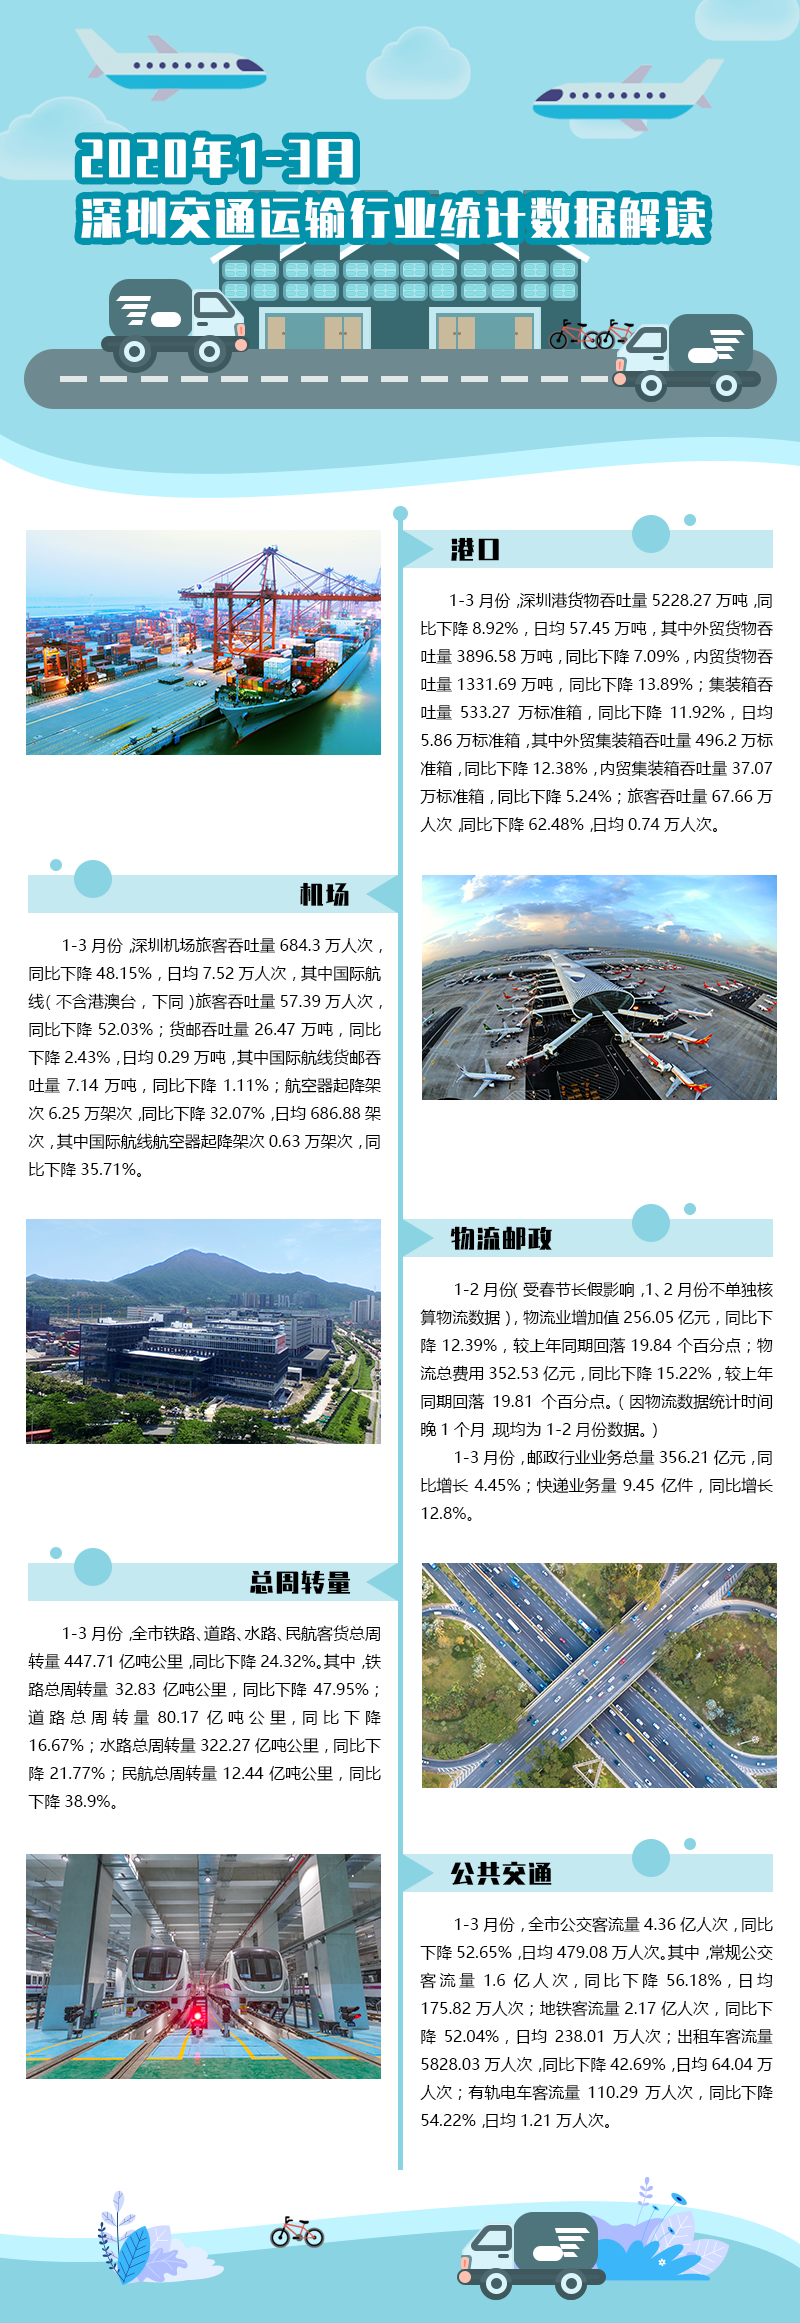 2020年1-3月深圳交通运输行业统计数据解读.png